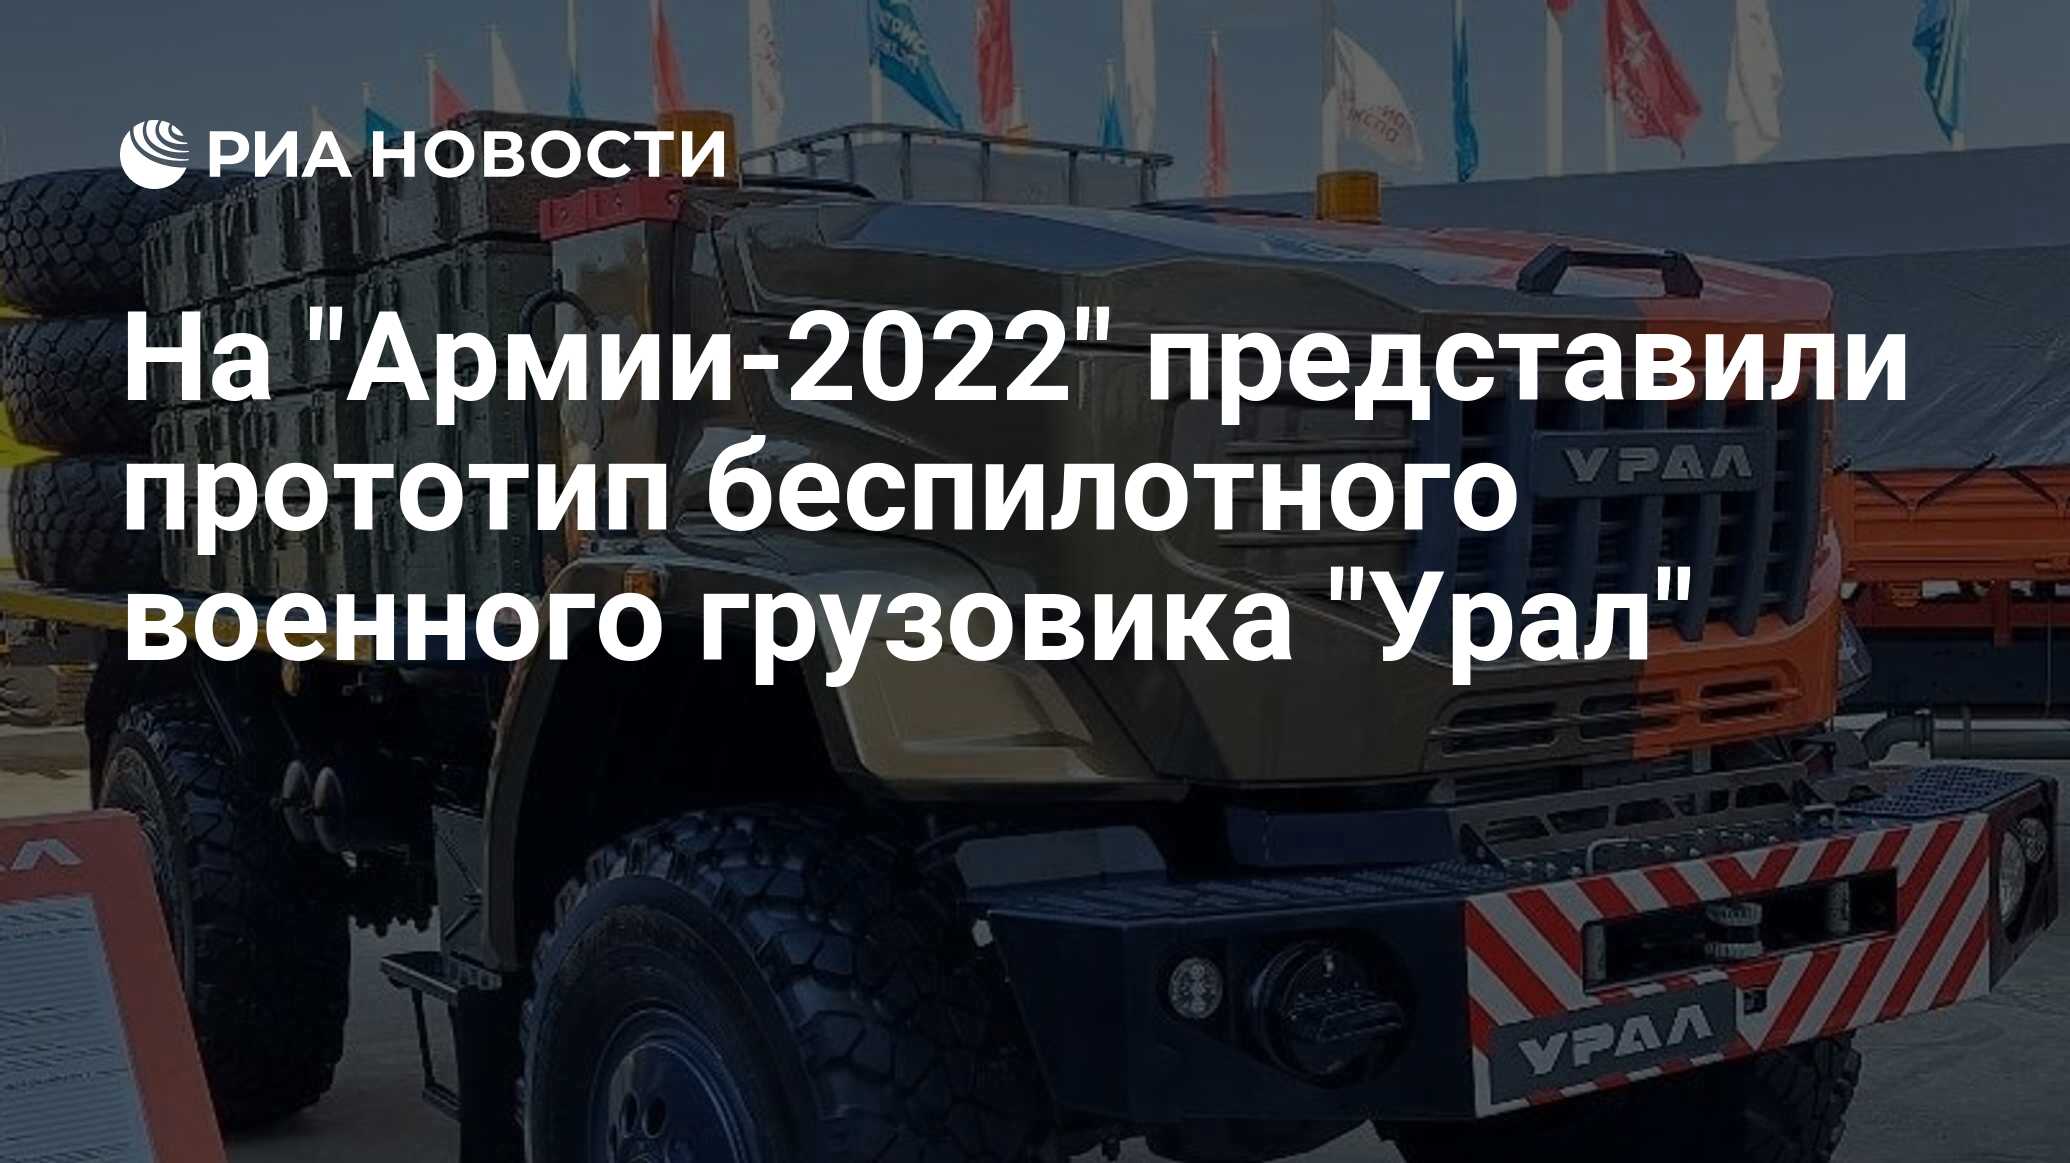 Урал" впервые представлен прототип первого для Вооруженных сил РФ ...